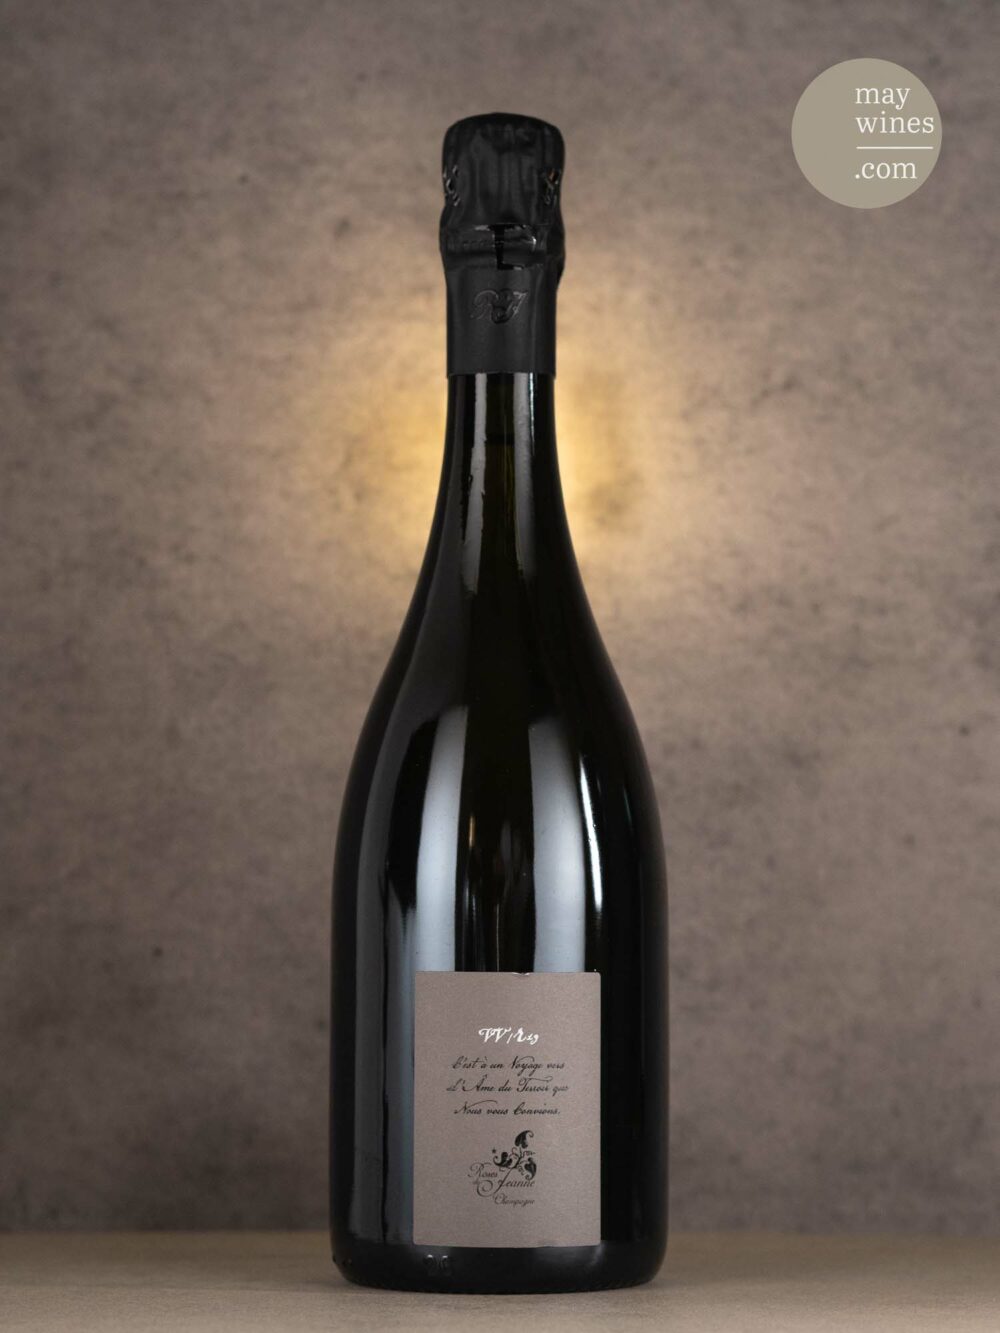 May Wines – Champagner – 2019 Côte de Val Vilaine Blanc de Noirs - Cédric Bouchard Roses de Jeanne